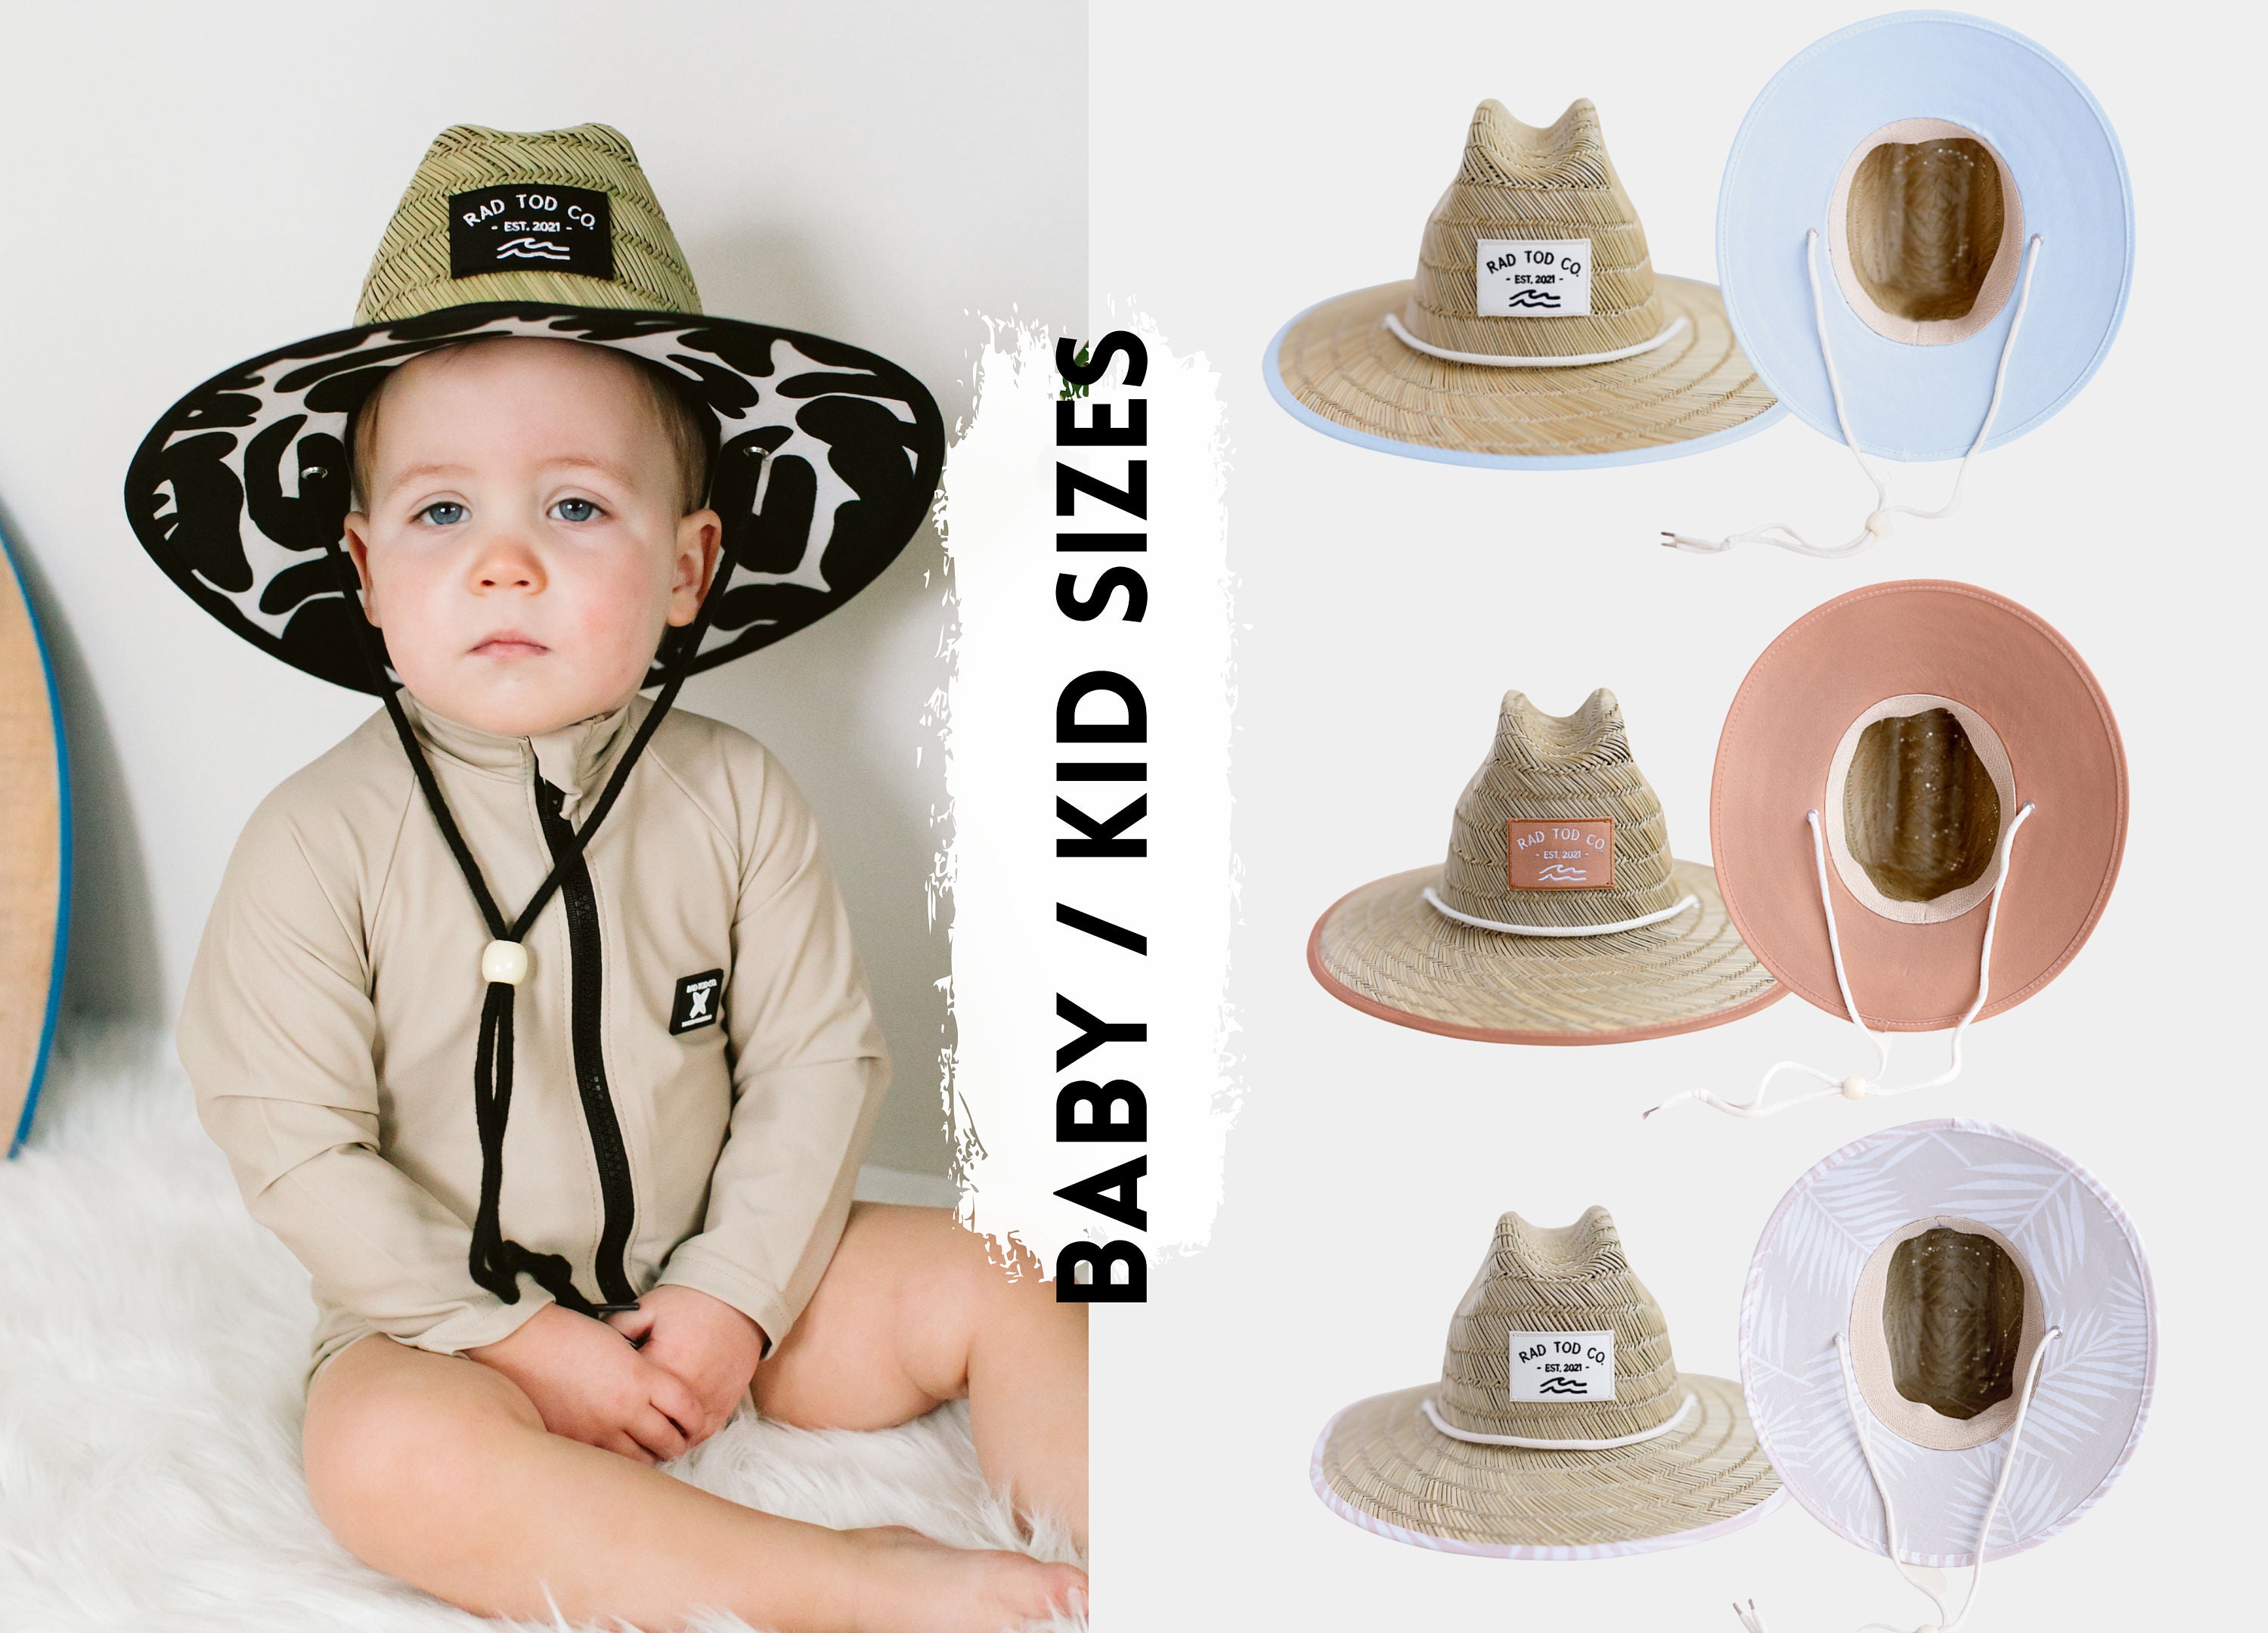 LLmoway Sombrero de paja de verano para niños, para bebés, niños pequeños,  sombrero de sol Fedora Beach